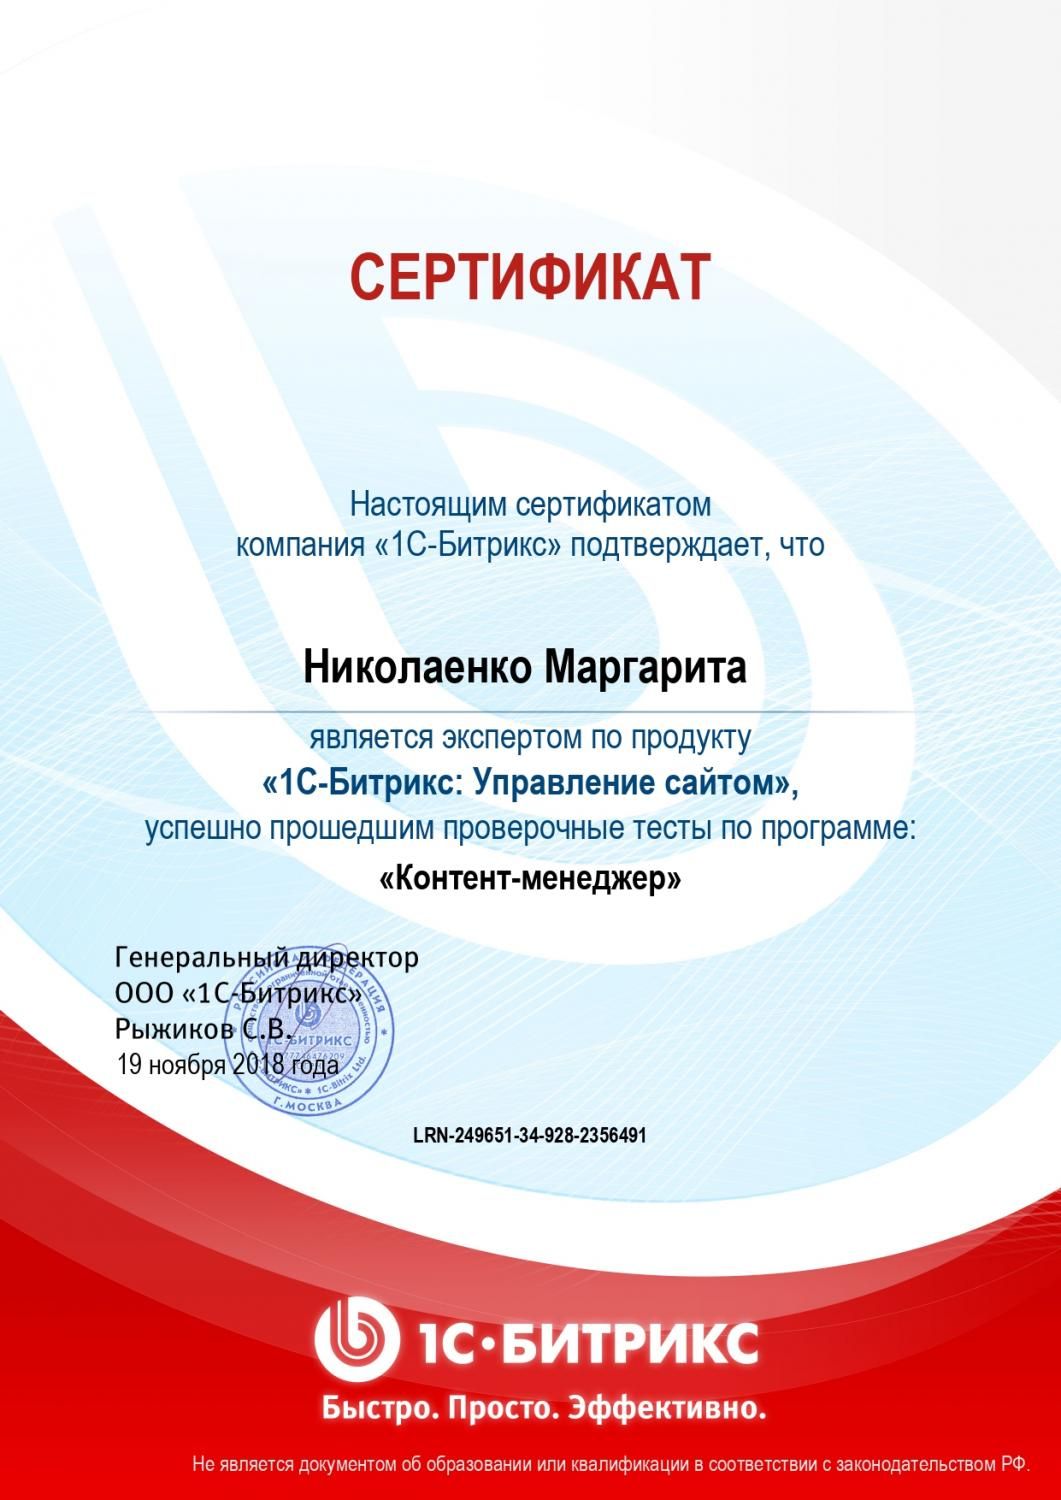 Сертификат эксперта по программе "Контент-менеджер" - Николаенко М. в Тулы